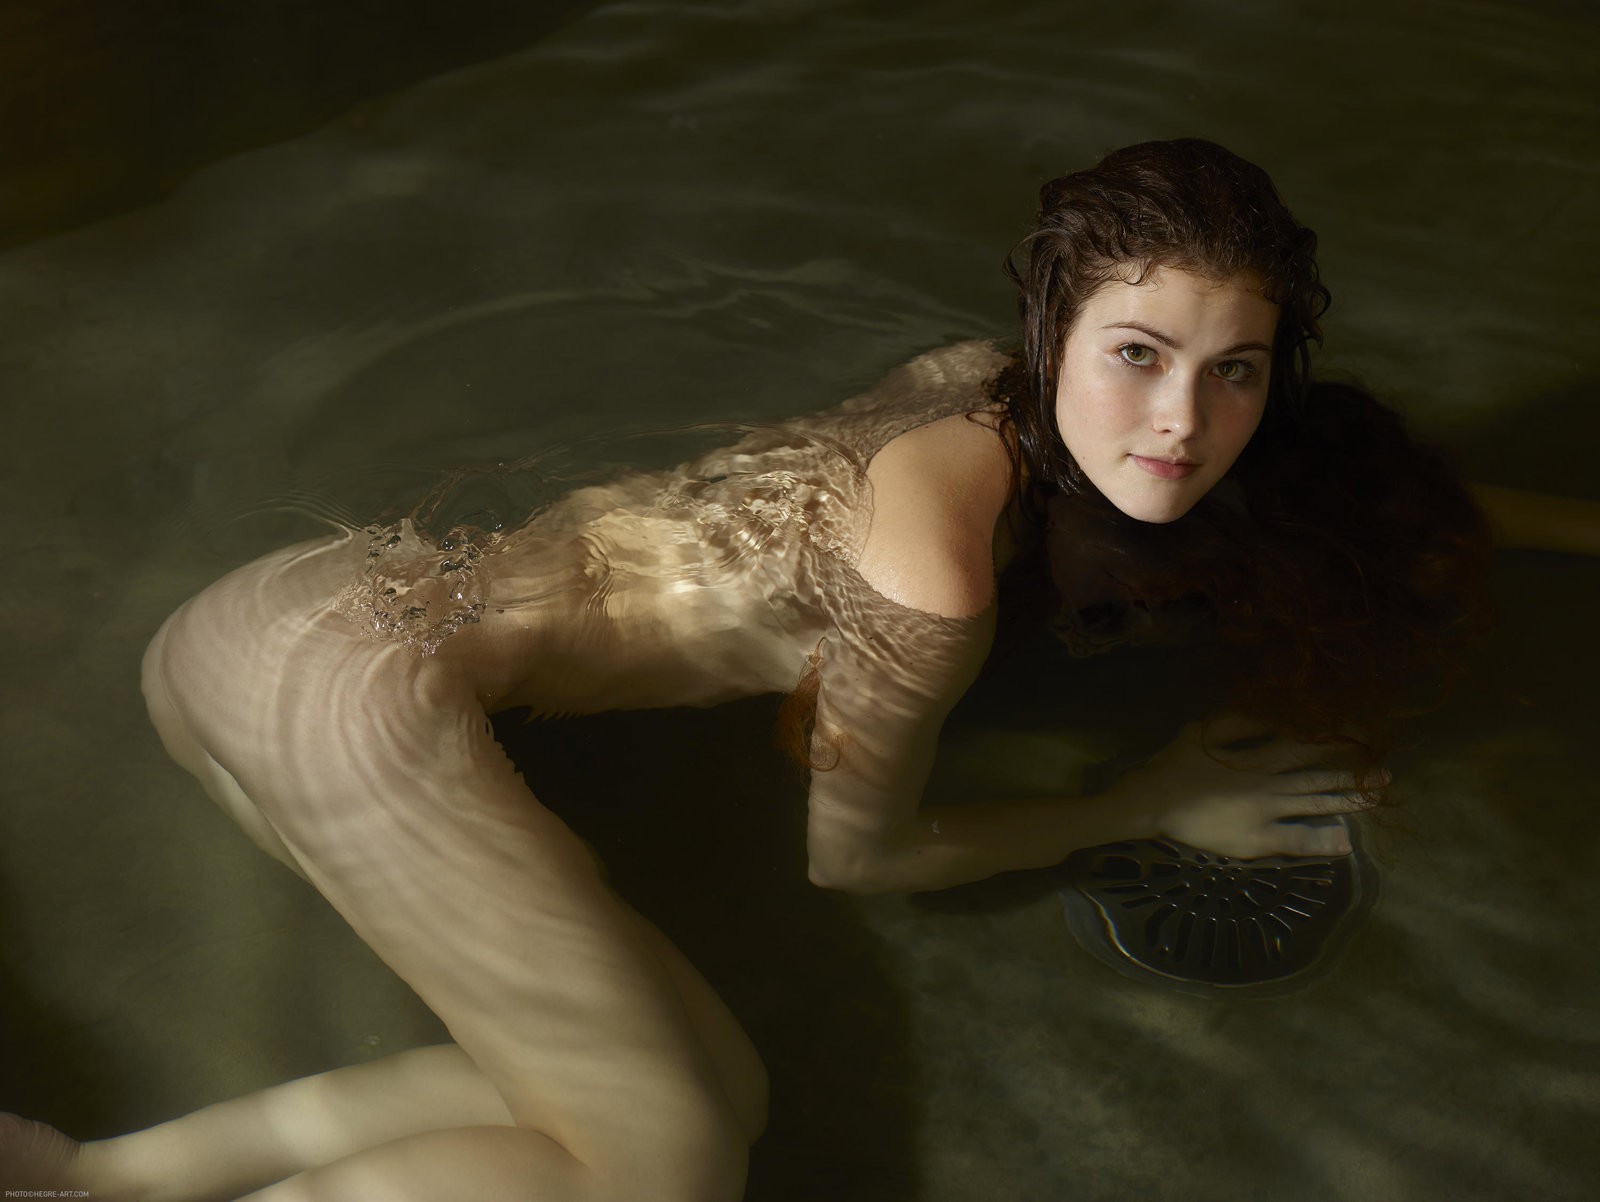 Мокрая девушка в бассейне без купальника - фото